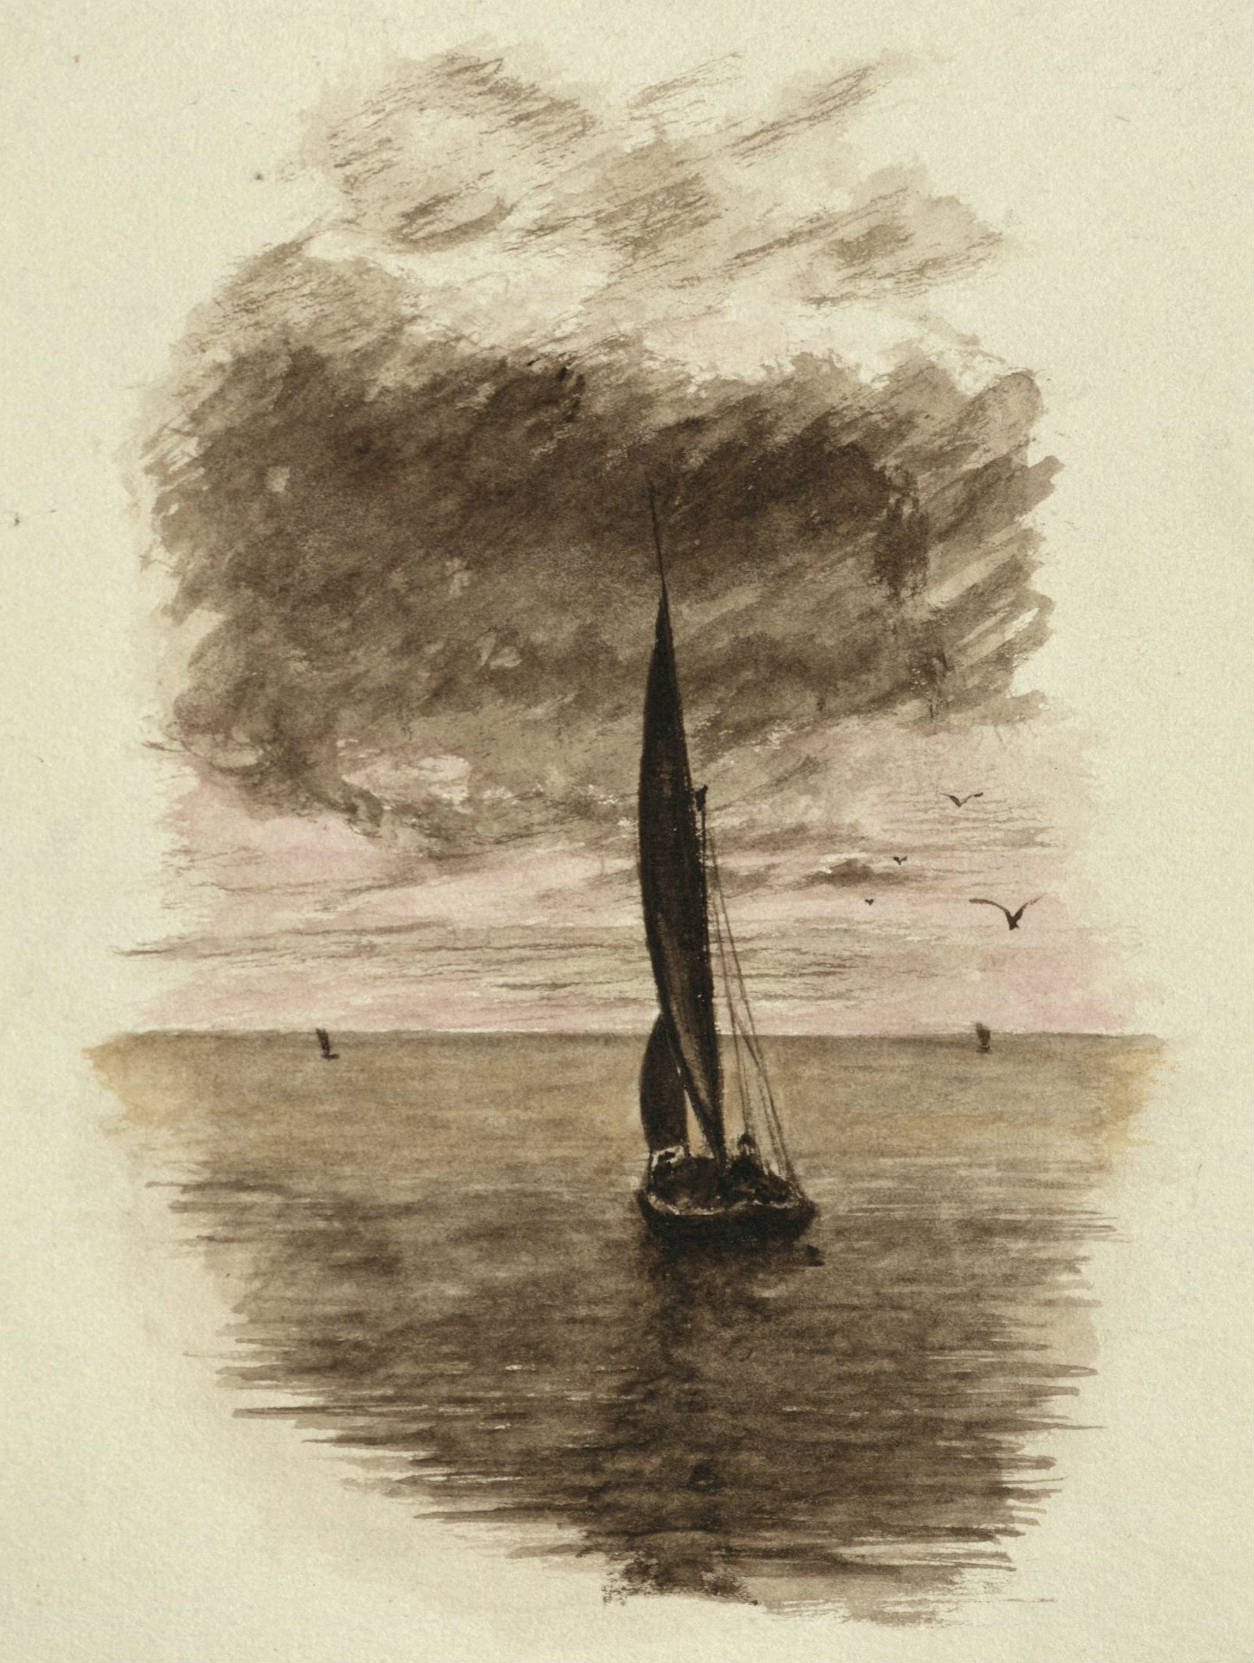 Black and white drawing of a sailboat at sea